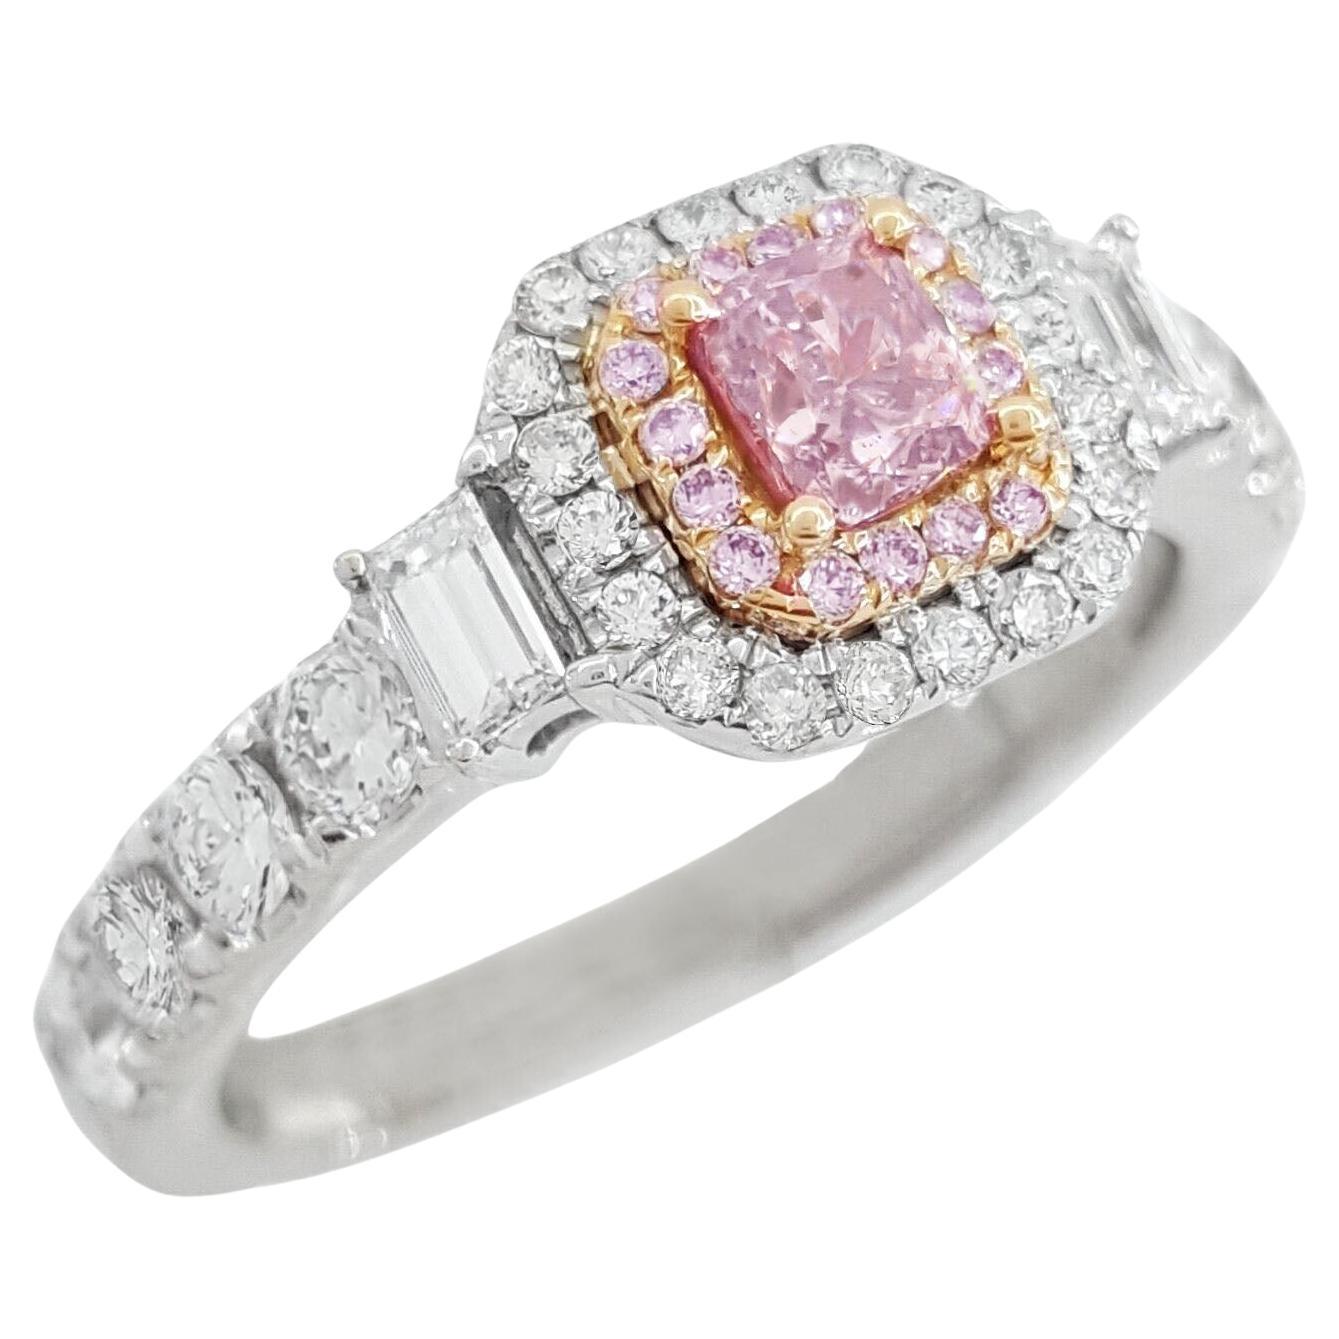 GIA zertifizierter Fancy Brown-Pink Cushion Diamond Ring